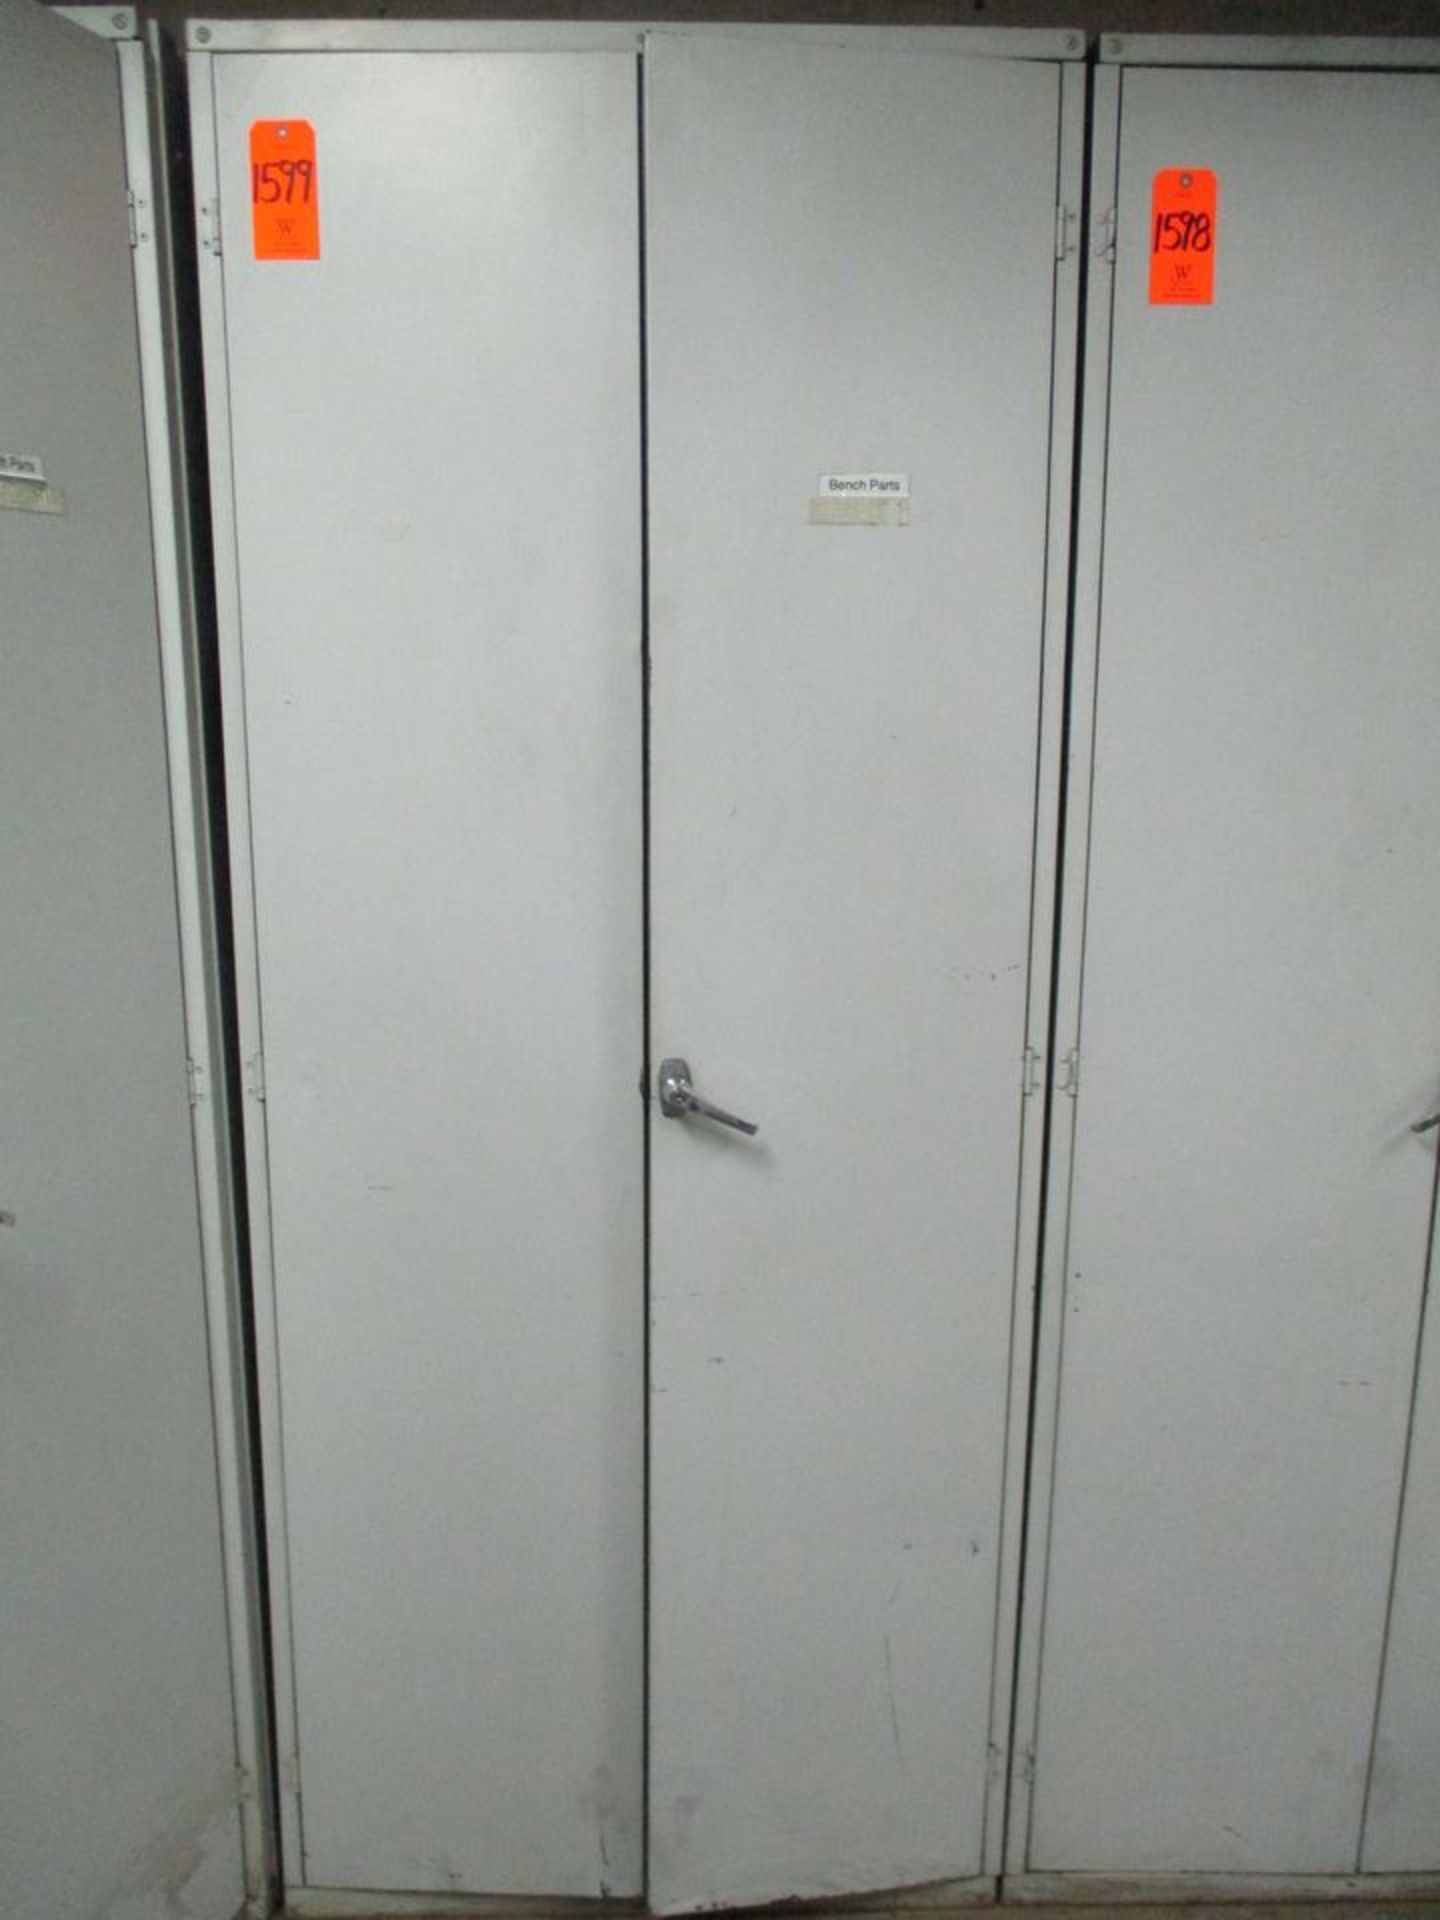 2-Door Metal Storage Cabinet, 36" X 20" X 87" (Basement CY-68 Cage 7)